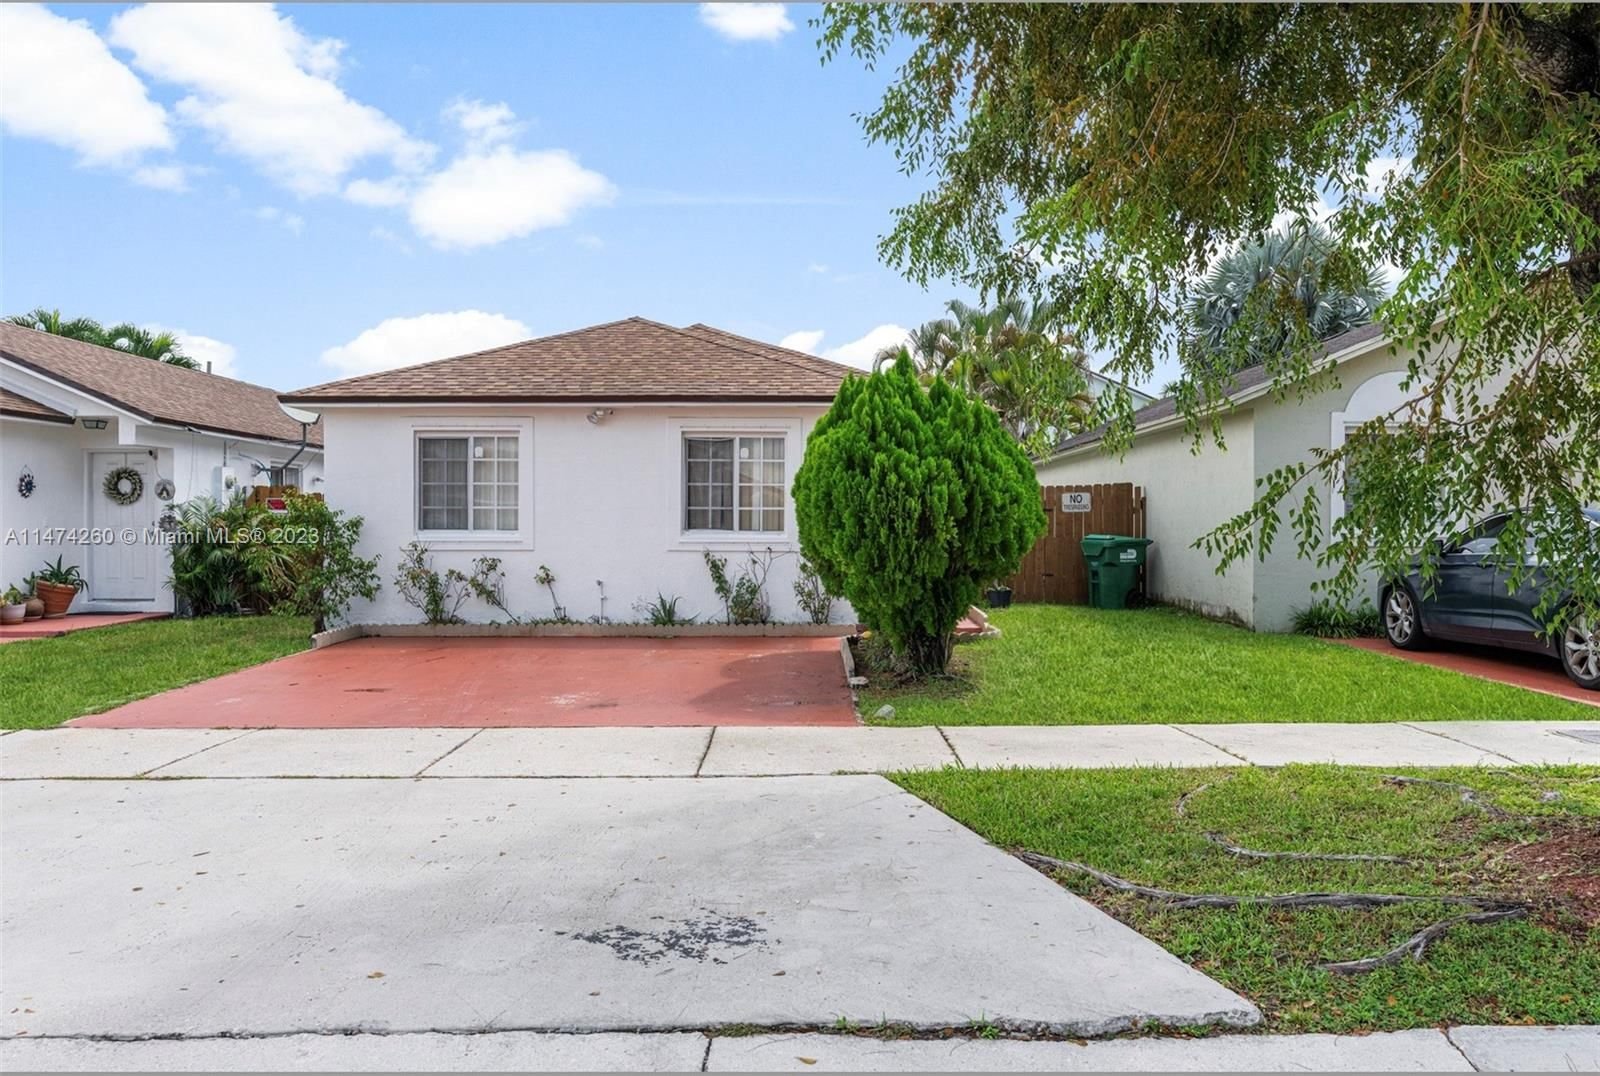 Real estate property located at 16101 139th Ave, Miami-Dade County, MONACO DREAM HOMES, Miami, FL